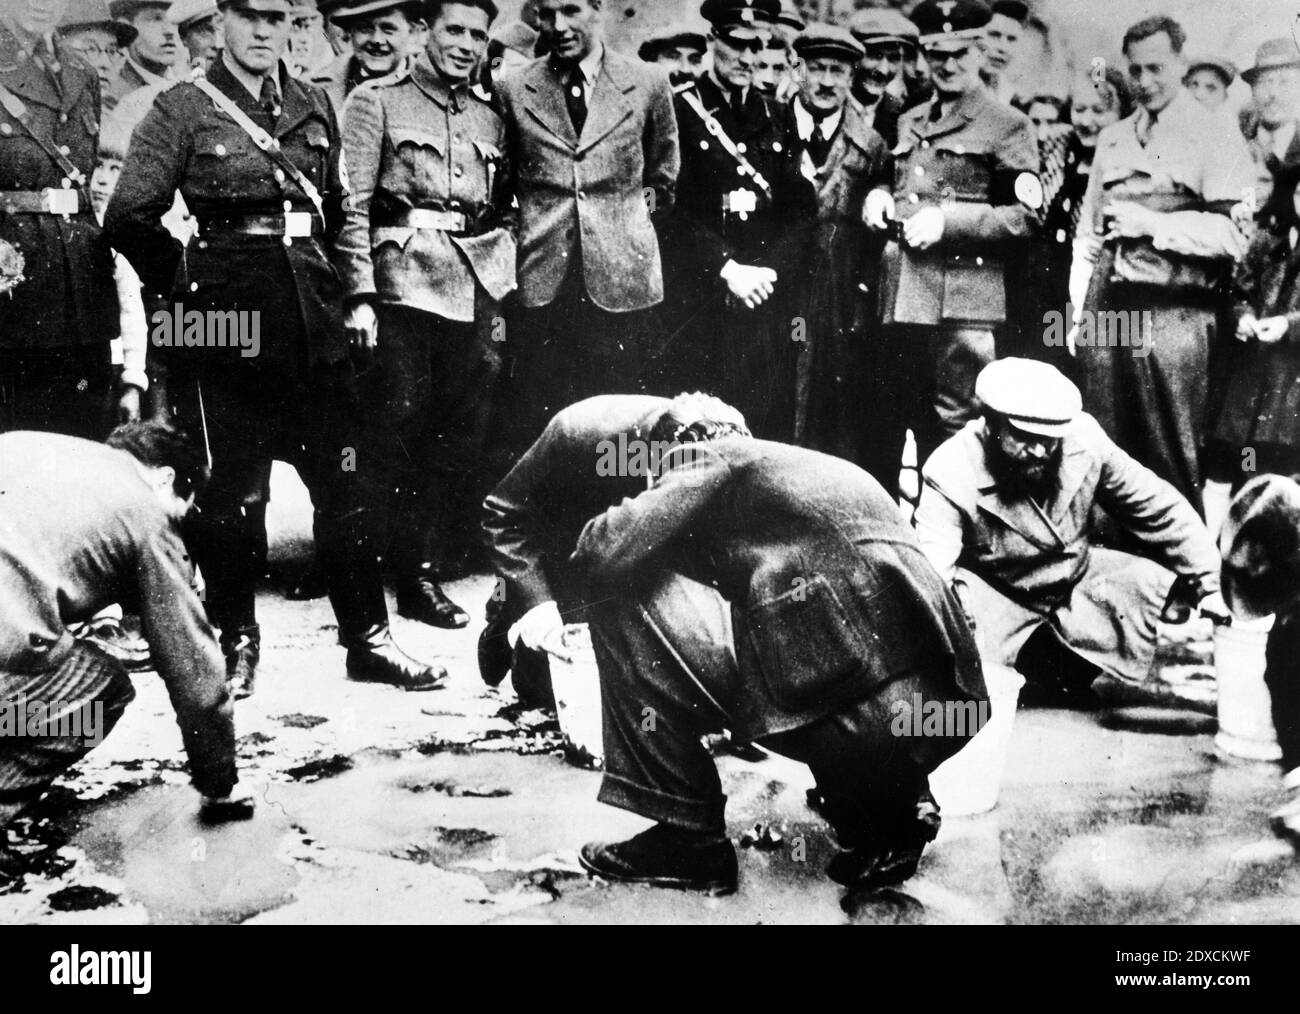 Österreichische Nazis und Anwohner sehen zu, wie Juden gezwungen sind, auf ihre Hände und Knie zu gehen und den Bürgersteig zu schrubben. Datum: März 1938 - April 1938 Ort: Wien, Österreich Stockfoto